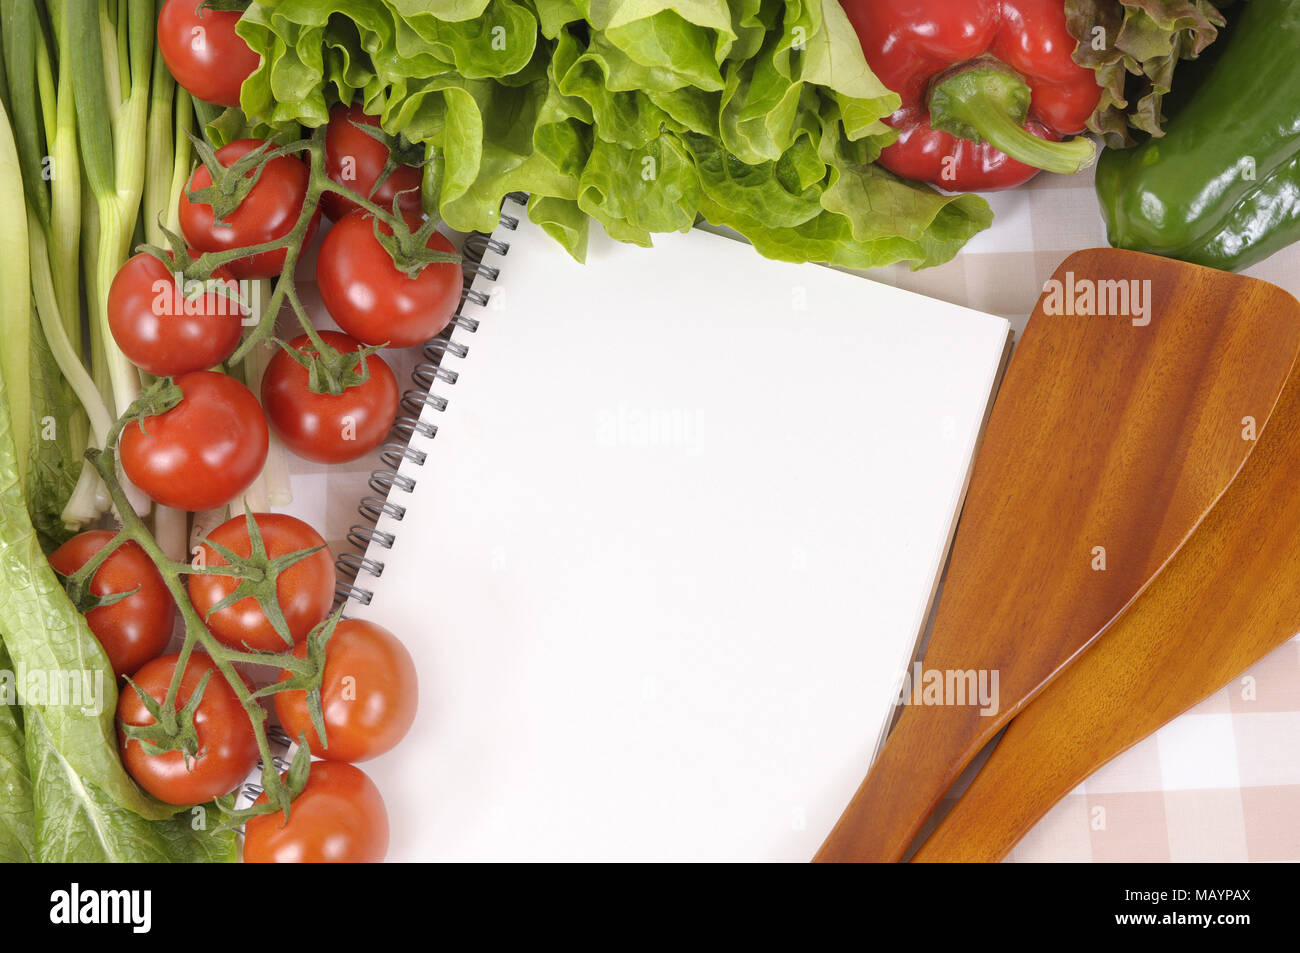 Auswahl an Salat Gemüse mit leeren Rezeptbuch oder Shopping Liste auf eine Tischdecke. Stockfoto